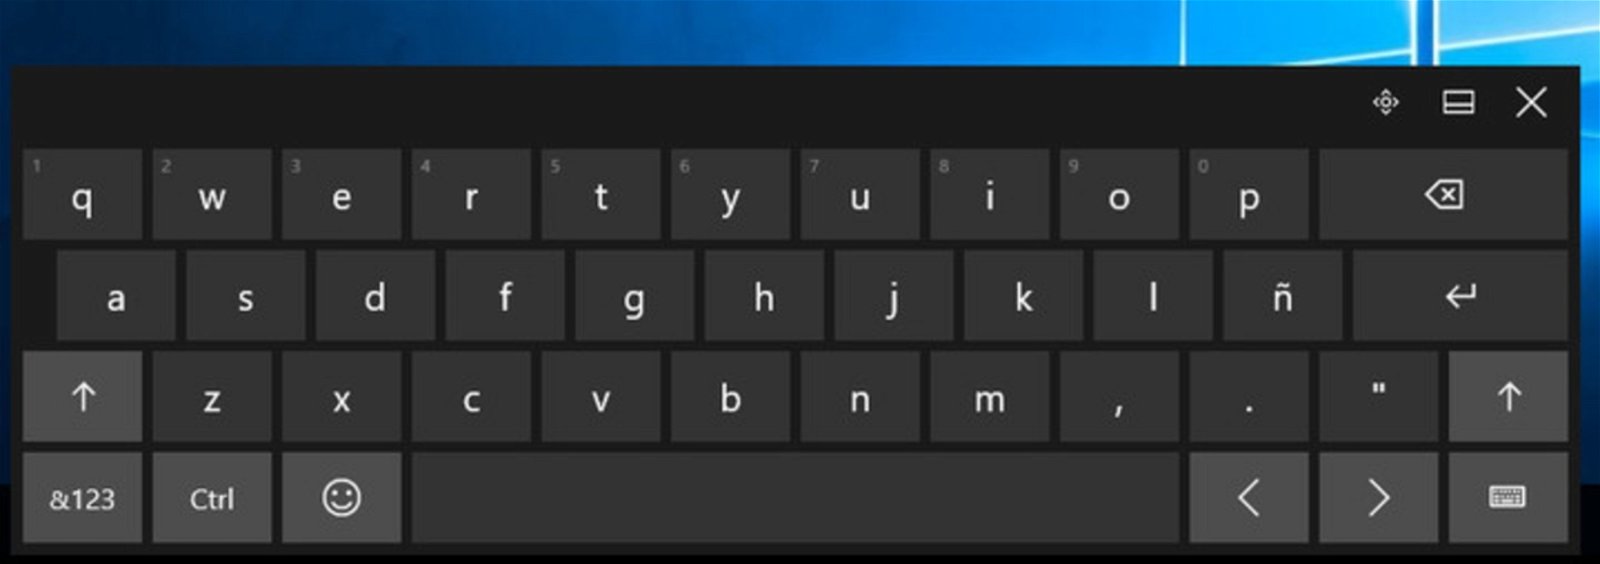 Cómo actuar ante la falta de la tecla Ñ en tu teclado